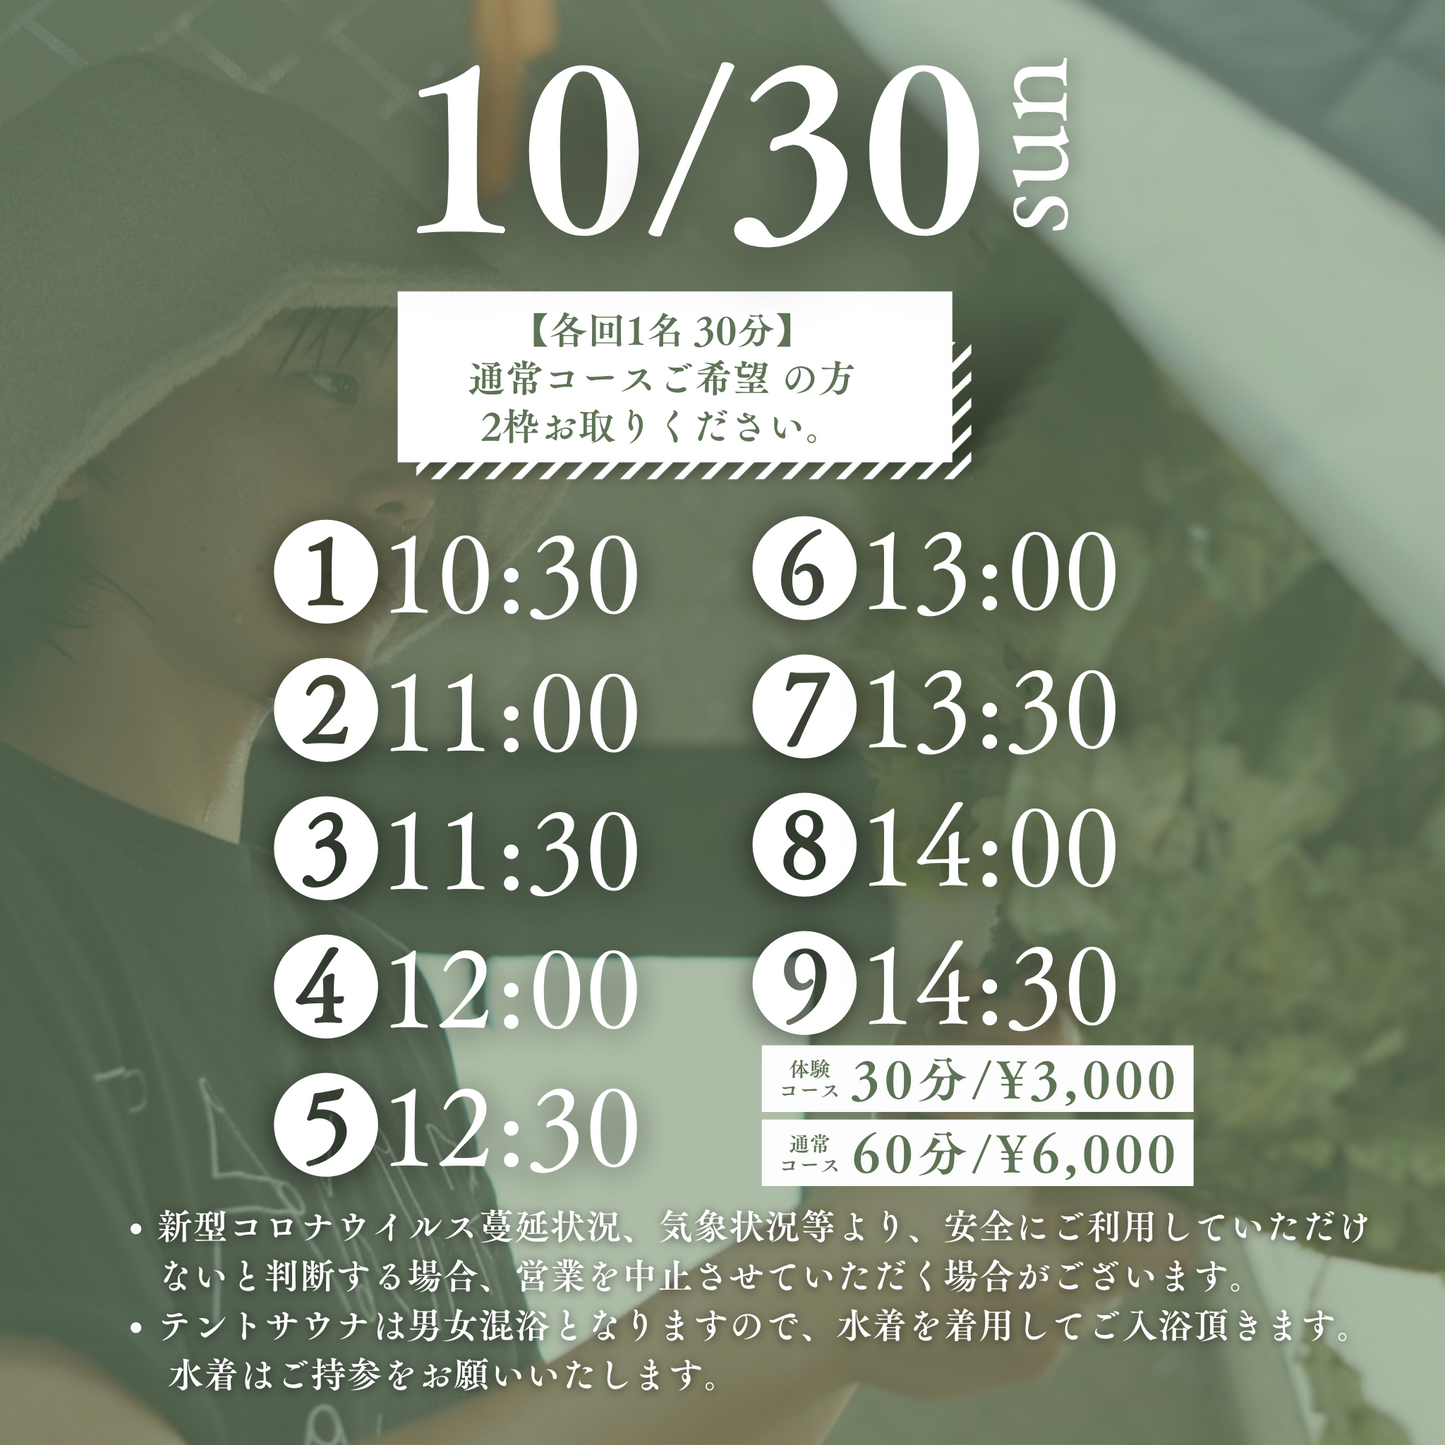 10/30(日) ぎゅっとフェス de ABiL 【ウィスキング体験_予約】